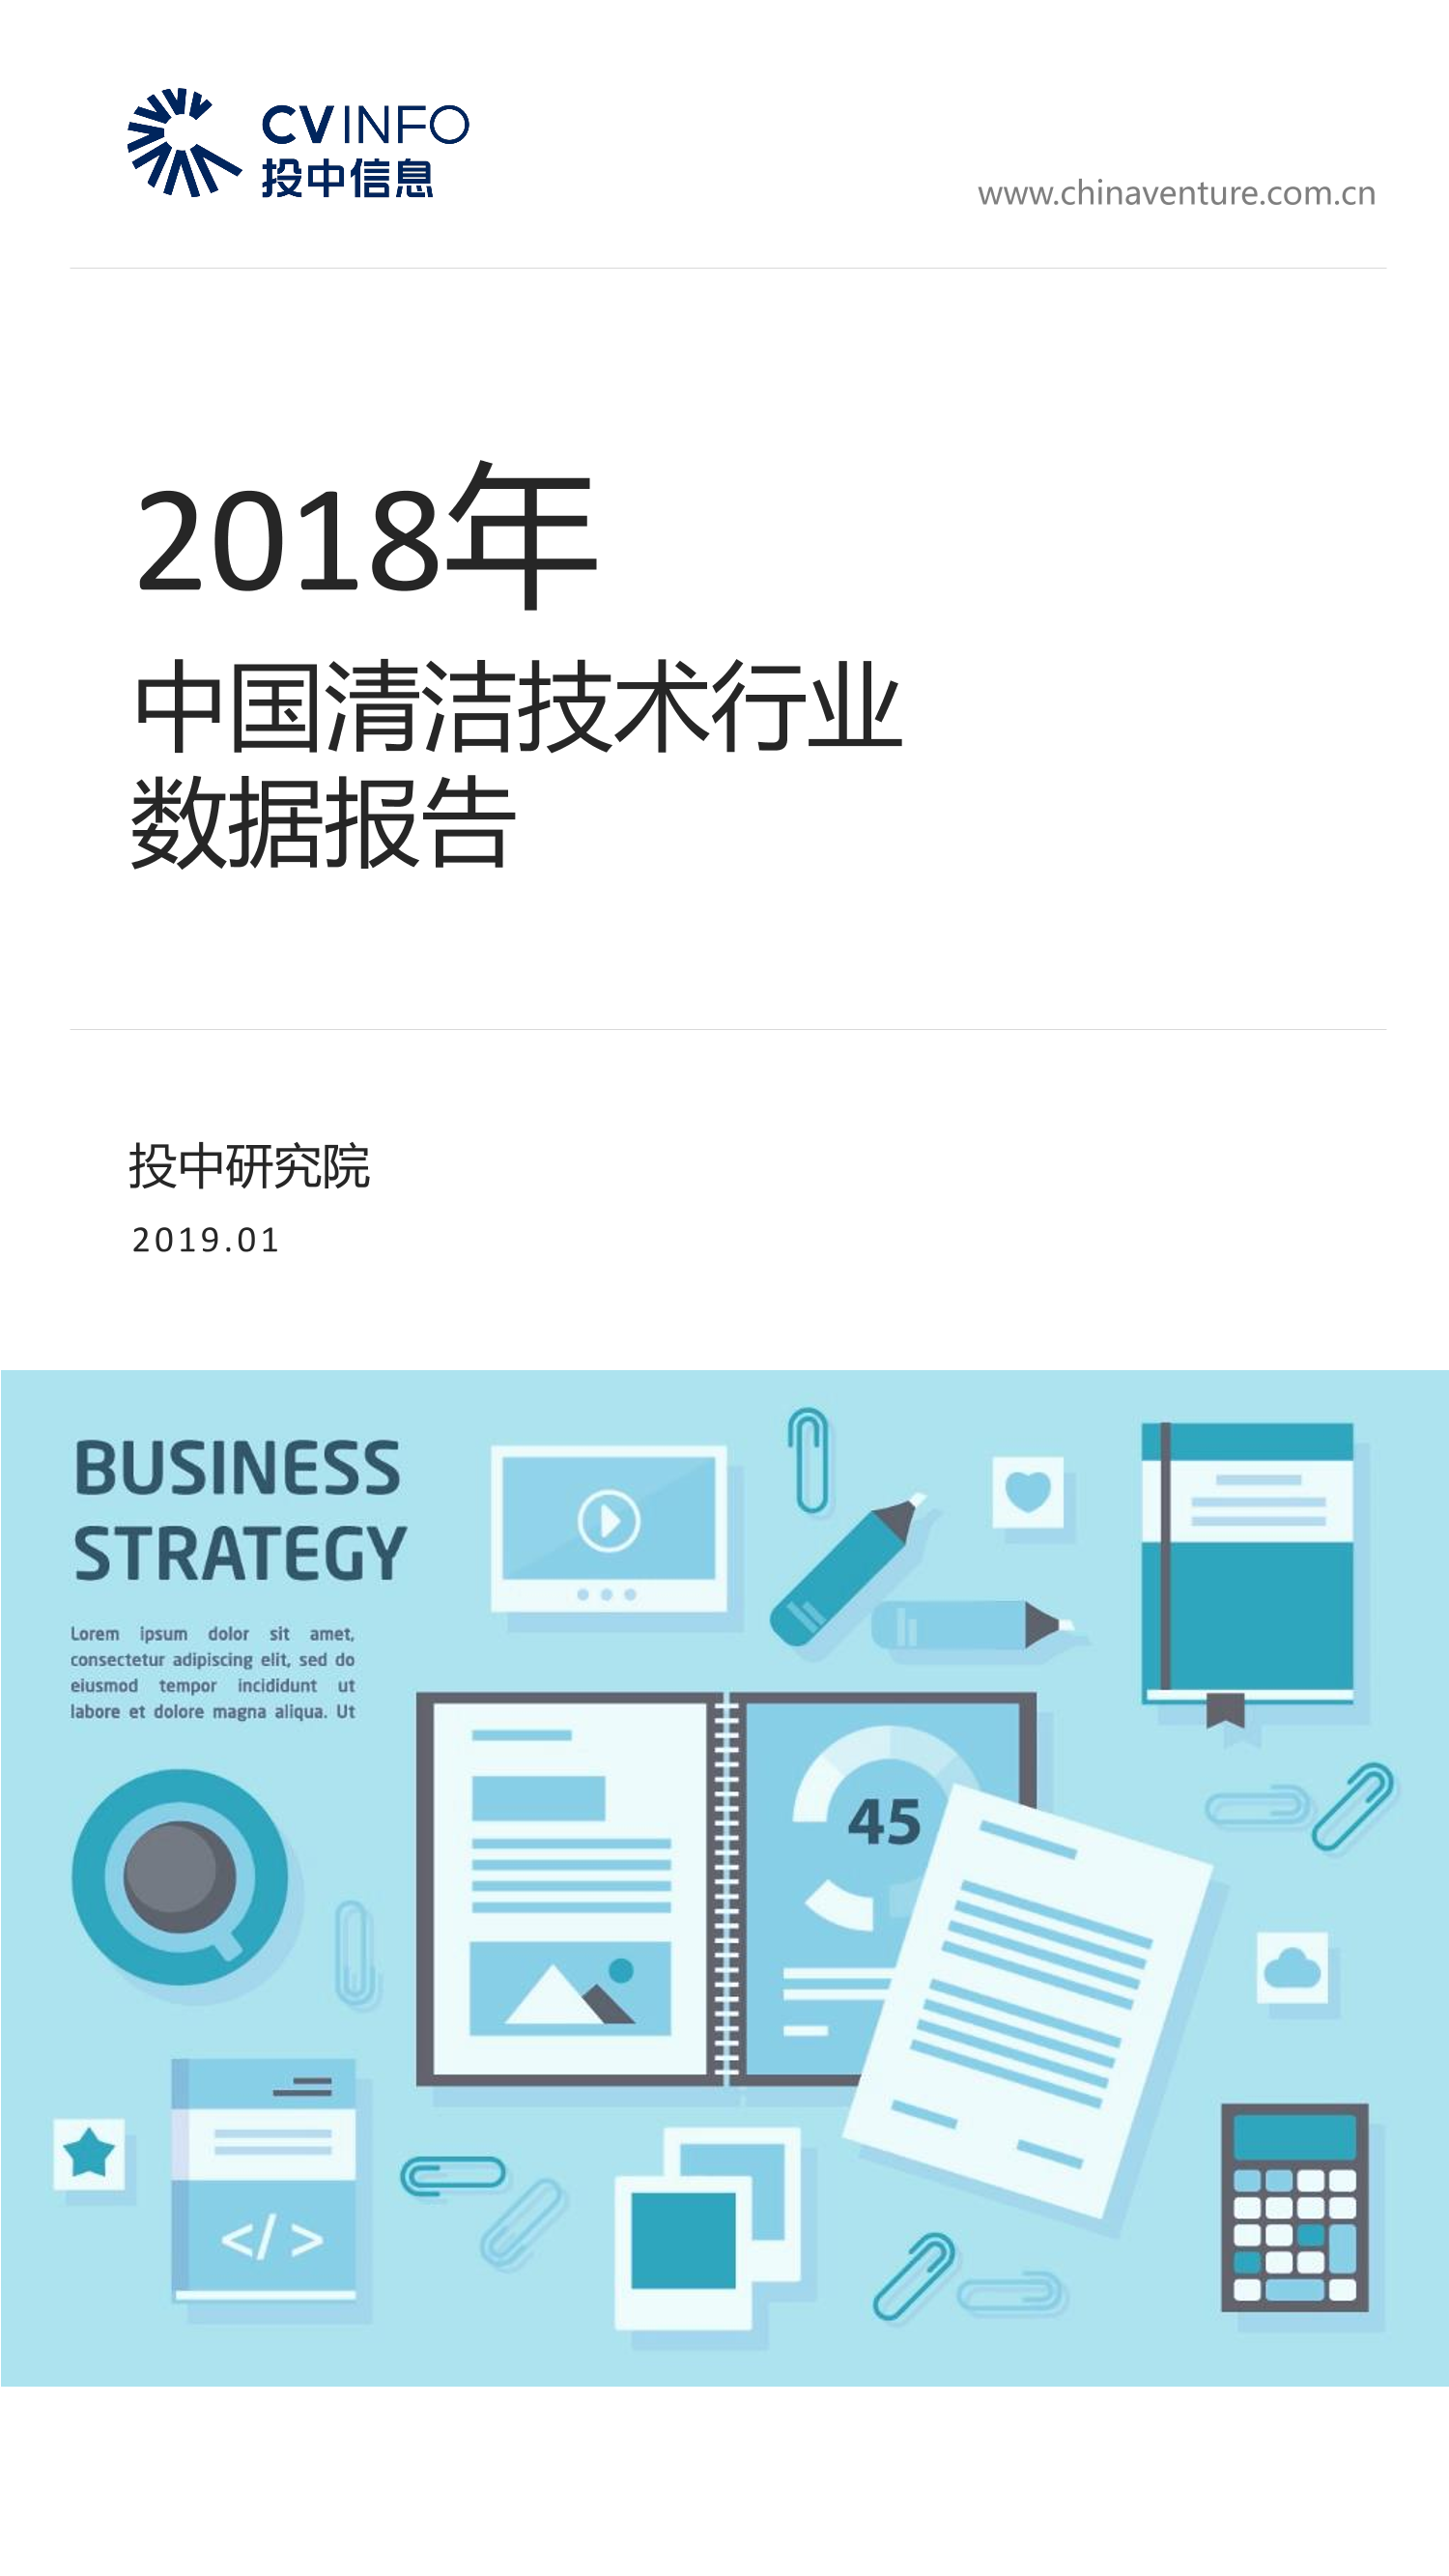 投中-2018年中国清洁技术行业数据报告-2019.1-19页投中-2018年中国清洁技术行业数据报告-2019.1-19页_1.png